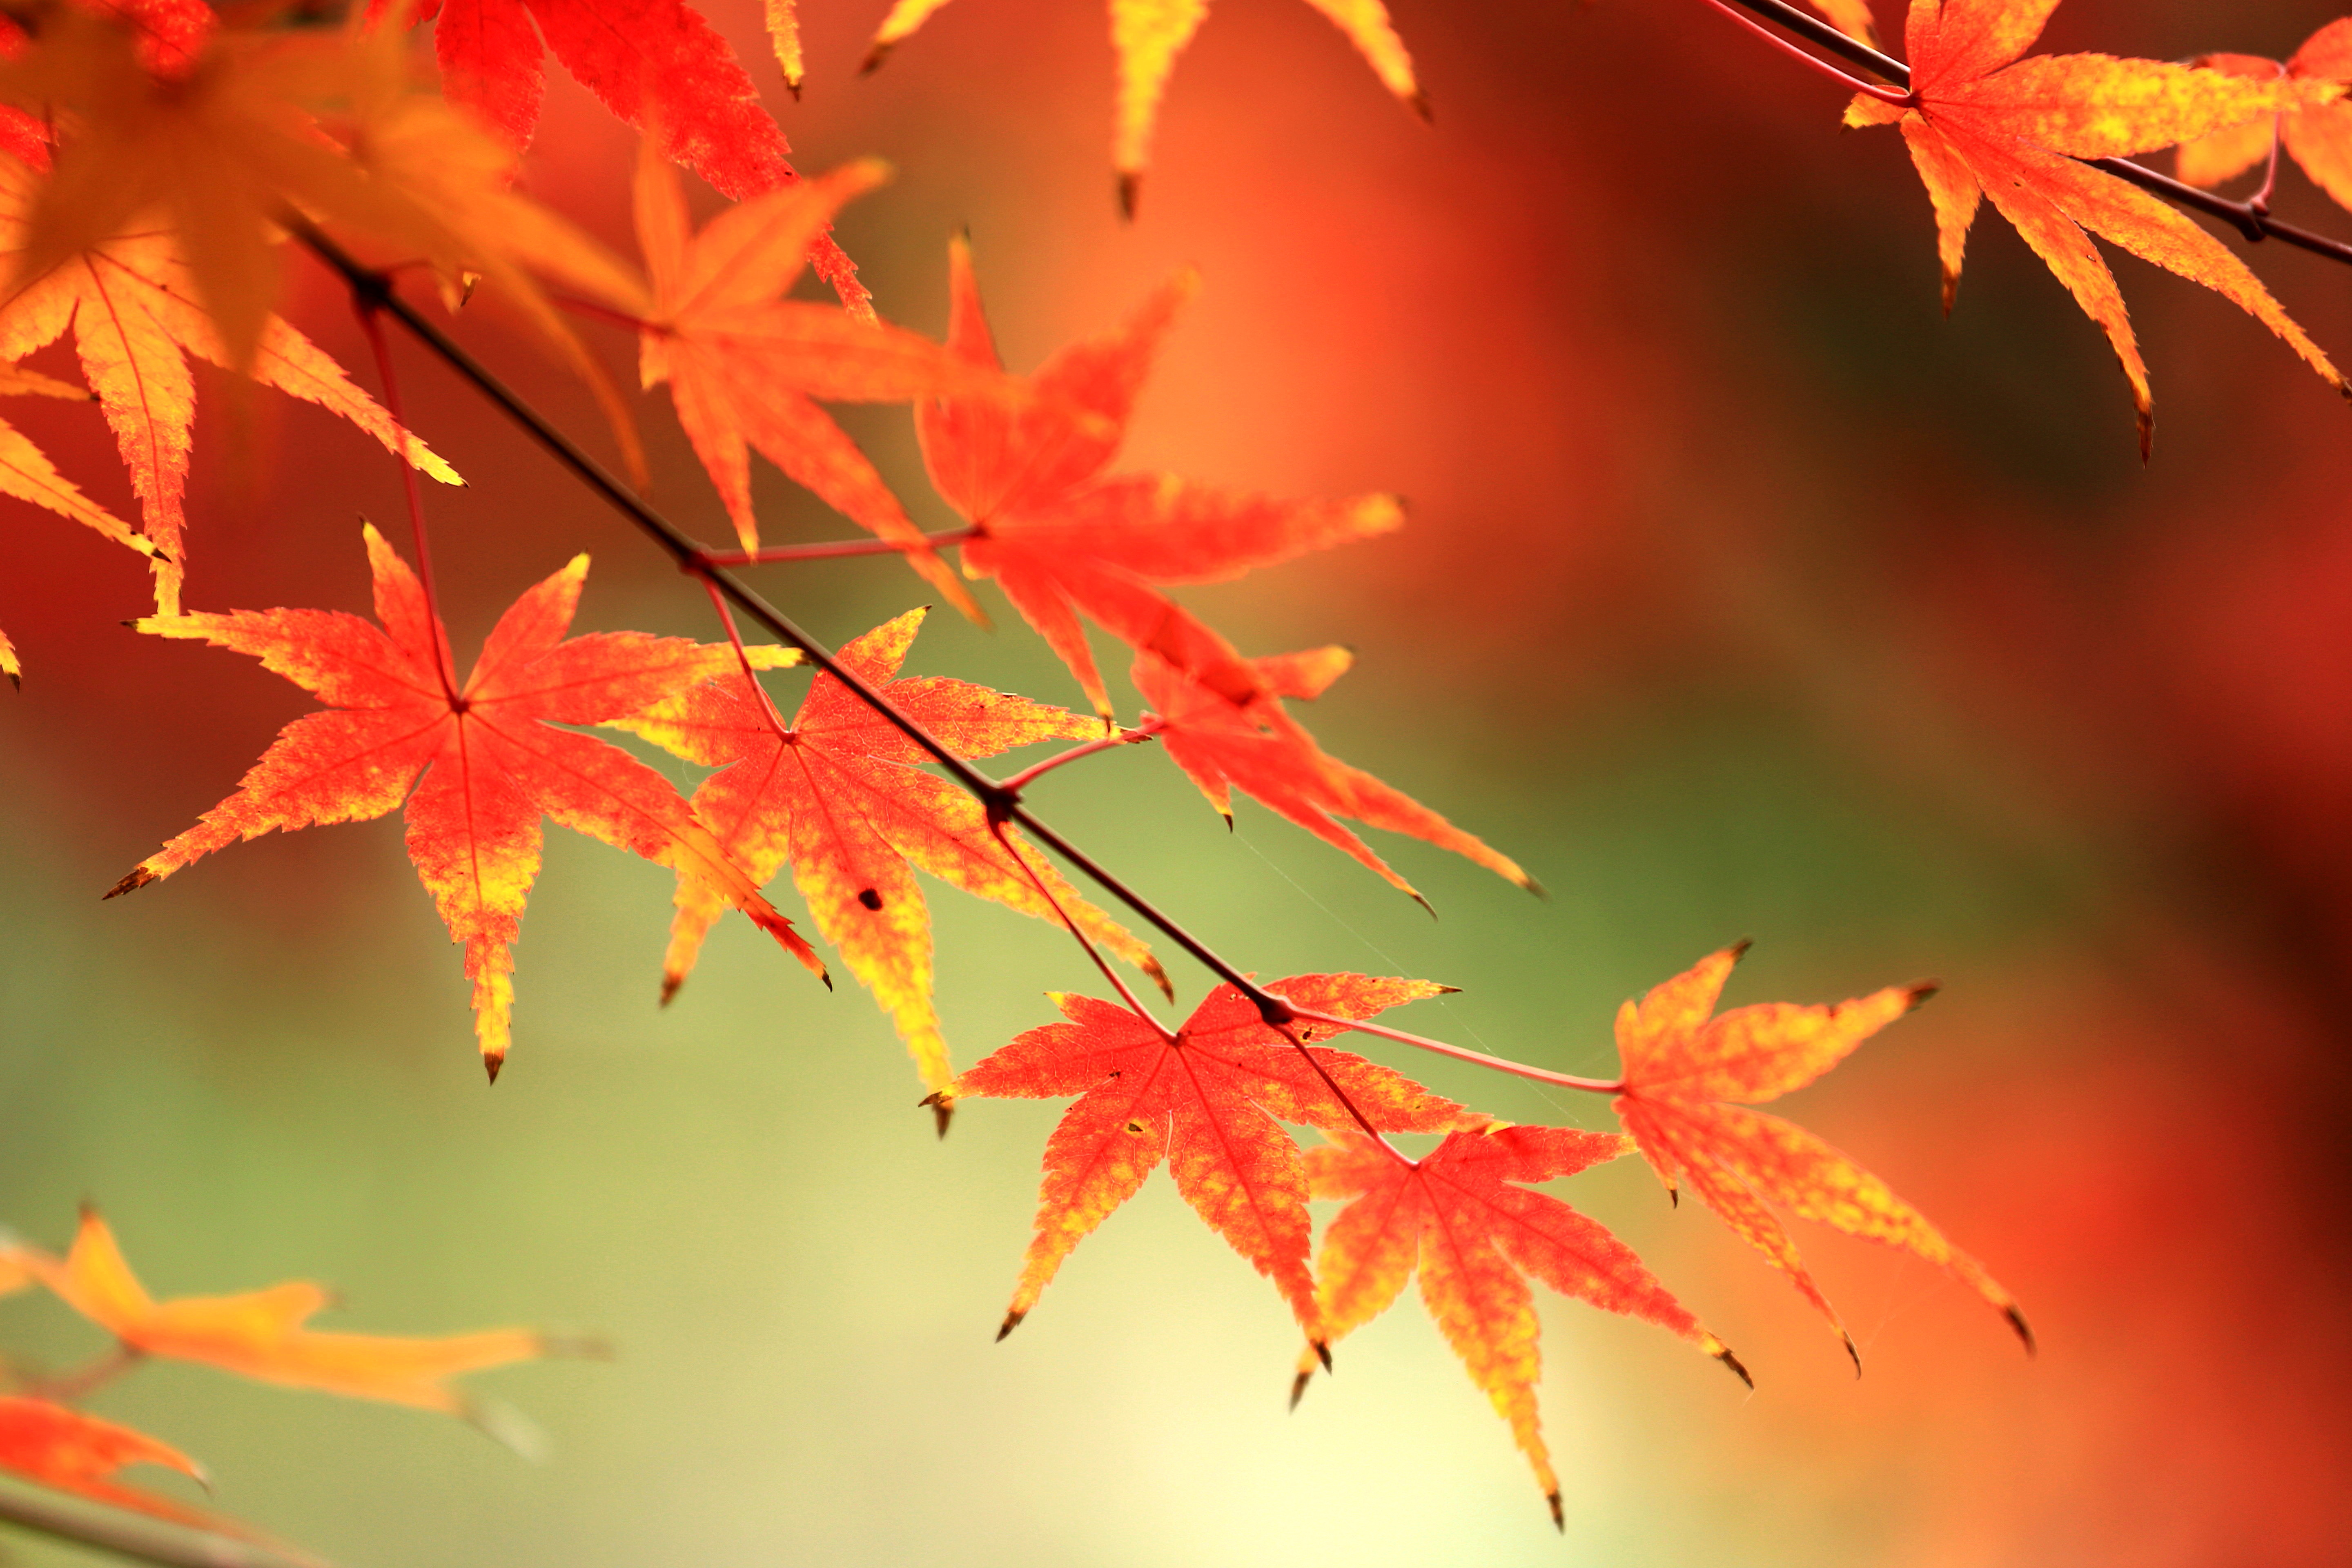 壁纸1600×1200壁纸 秋天红色的枫叶图片壁纸,浓浓秋色-秋天树叶摄影壁纸图片-风景壁纸-风景图片素材-桌面壁纸